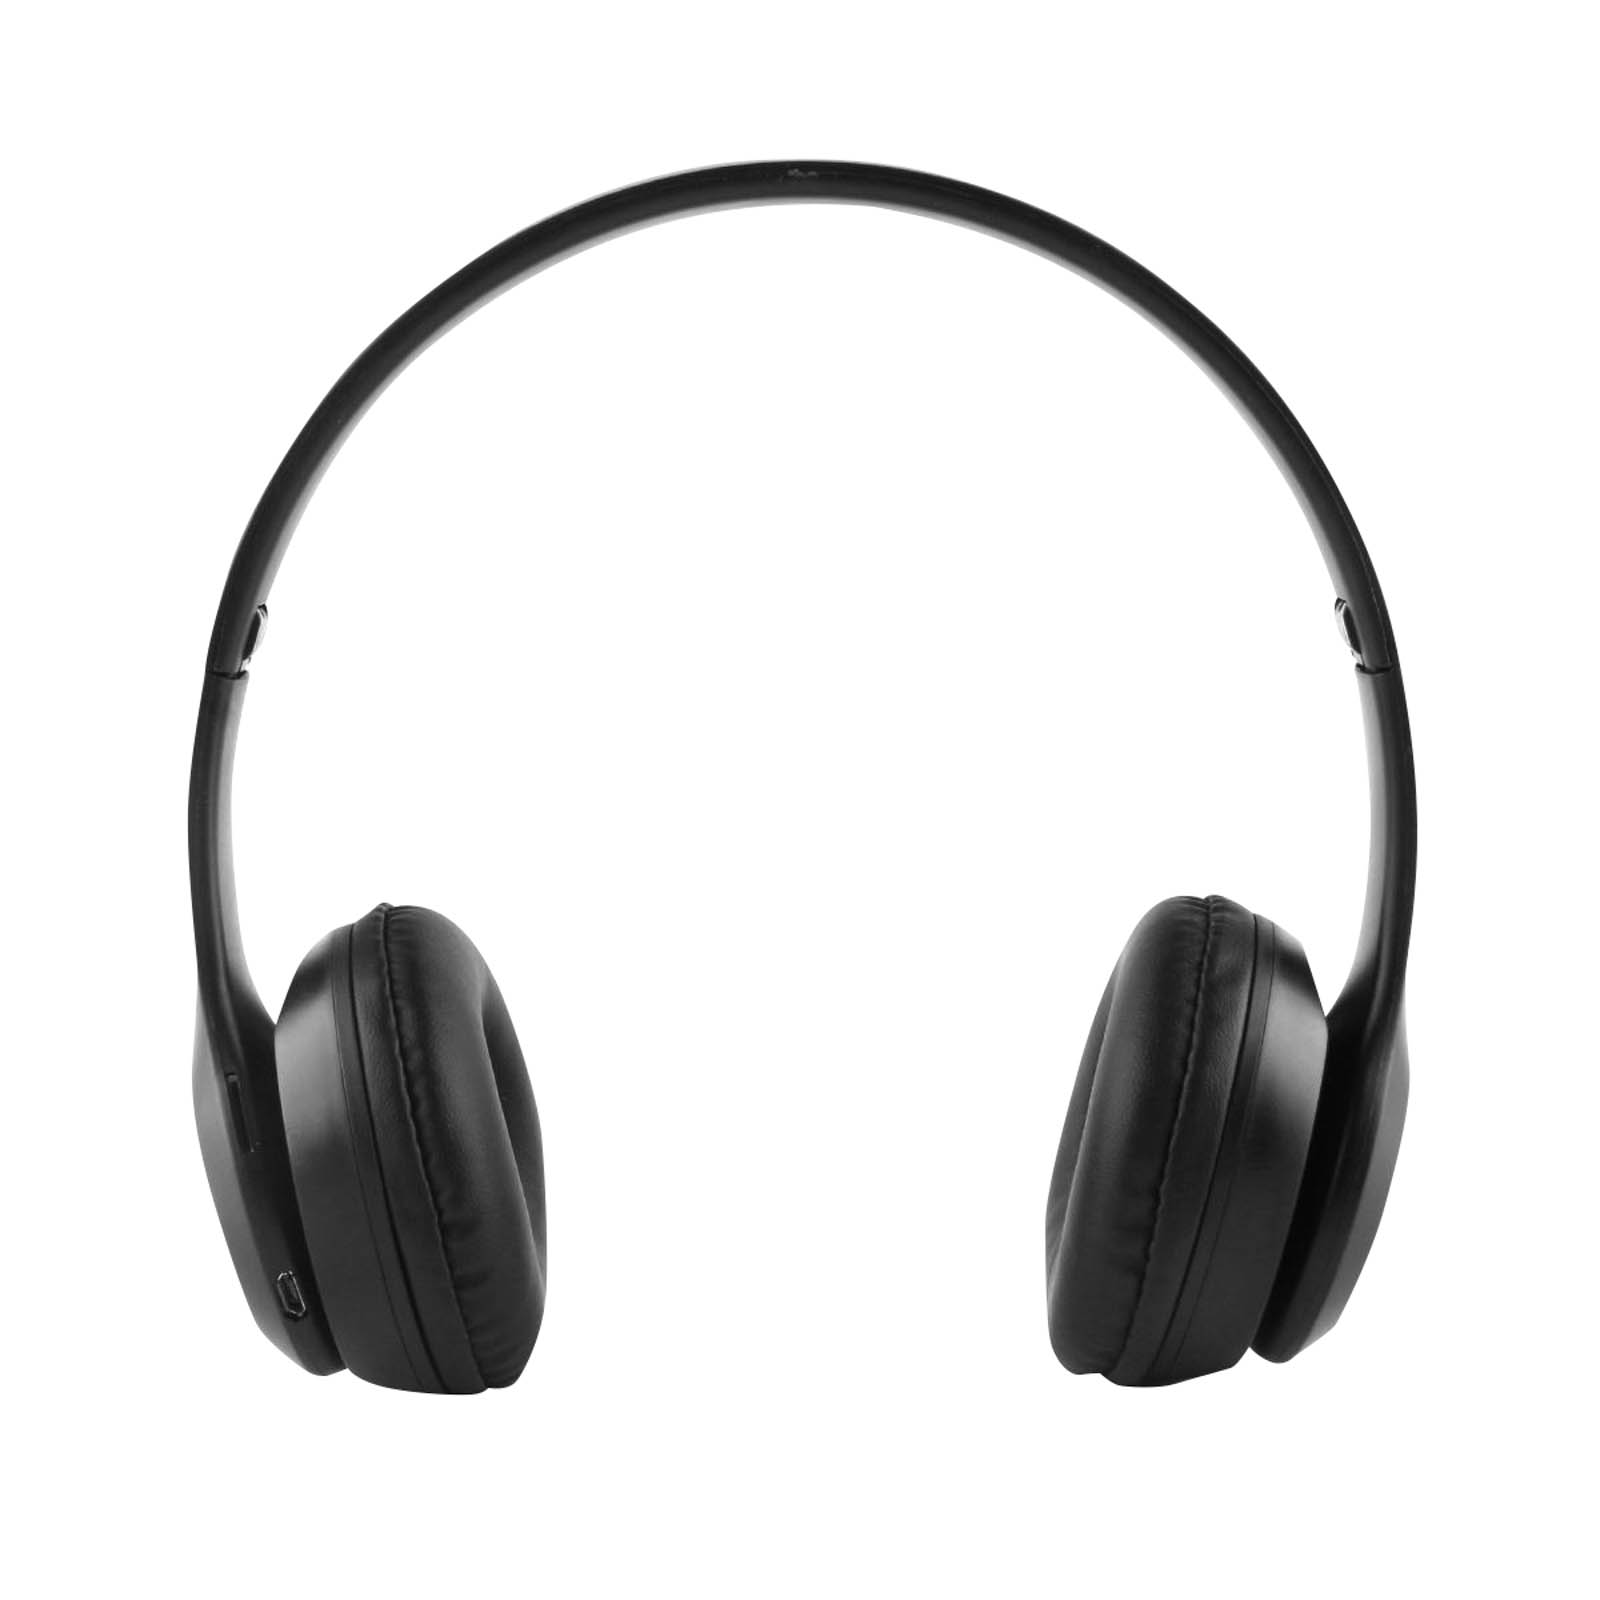 Casque Audio Stereo Bluetooth sans fil modèle P47, pliable - Noir